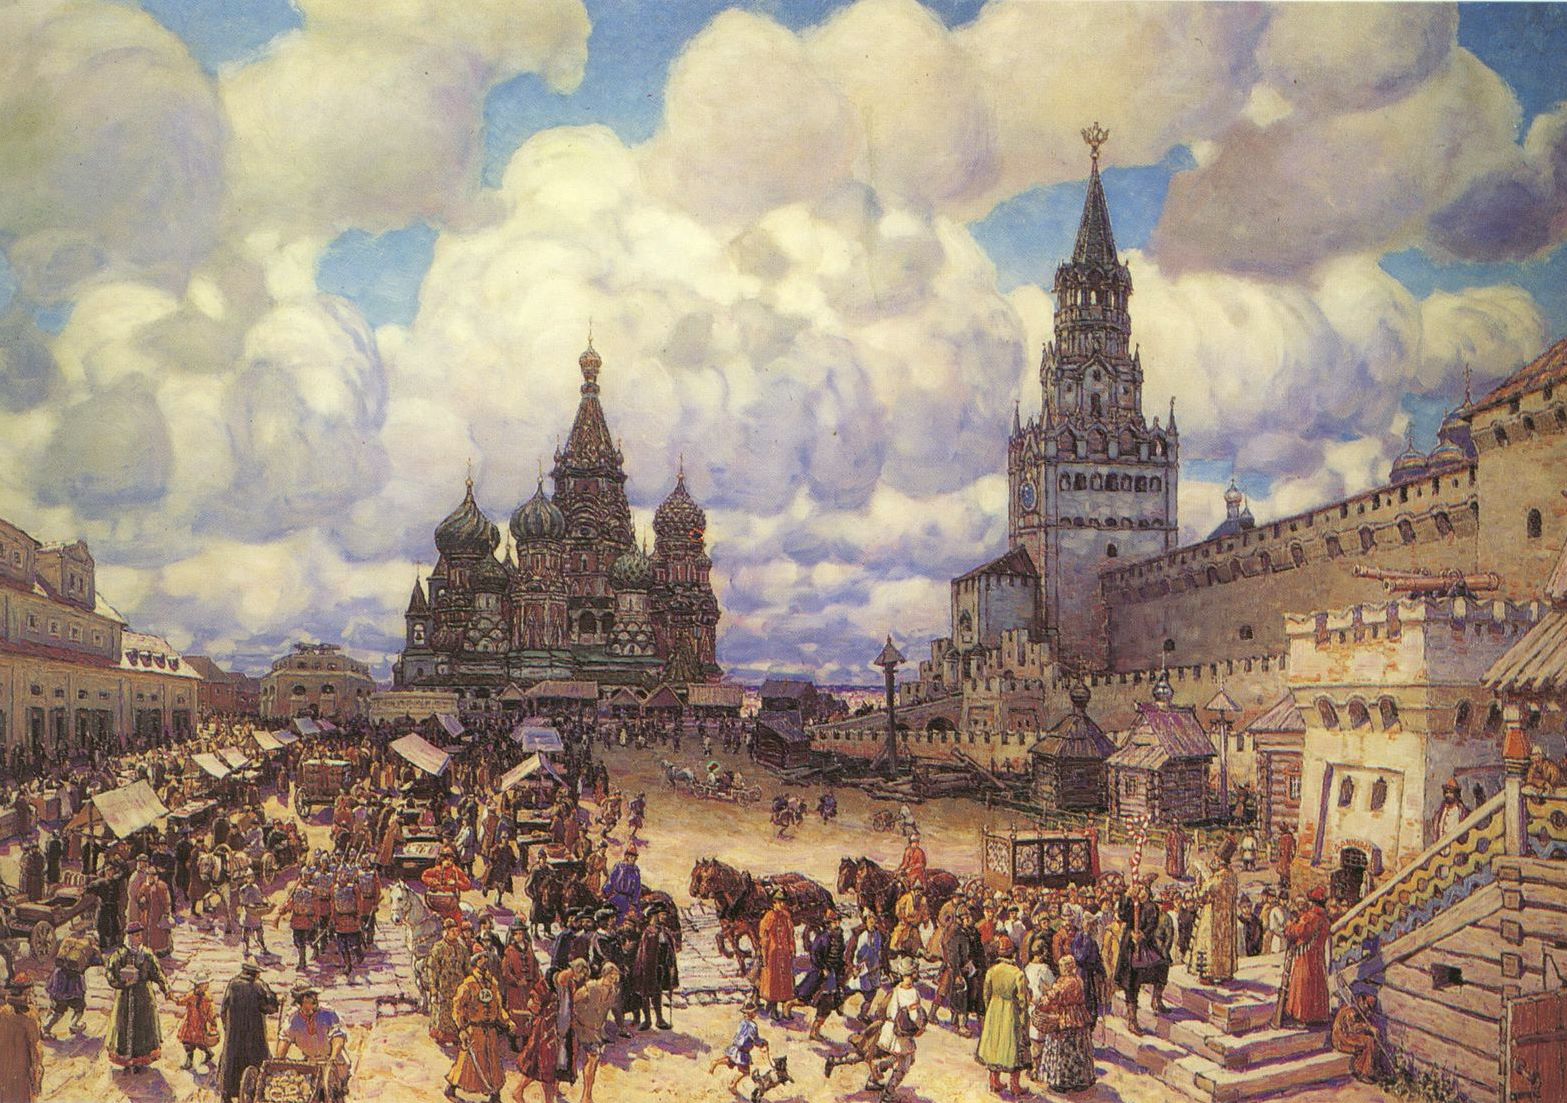 московский кремль 17 века